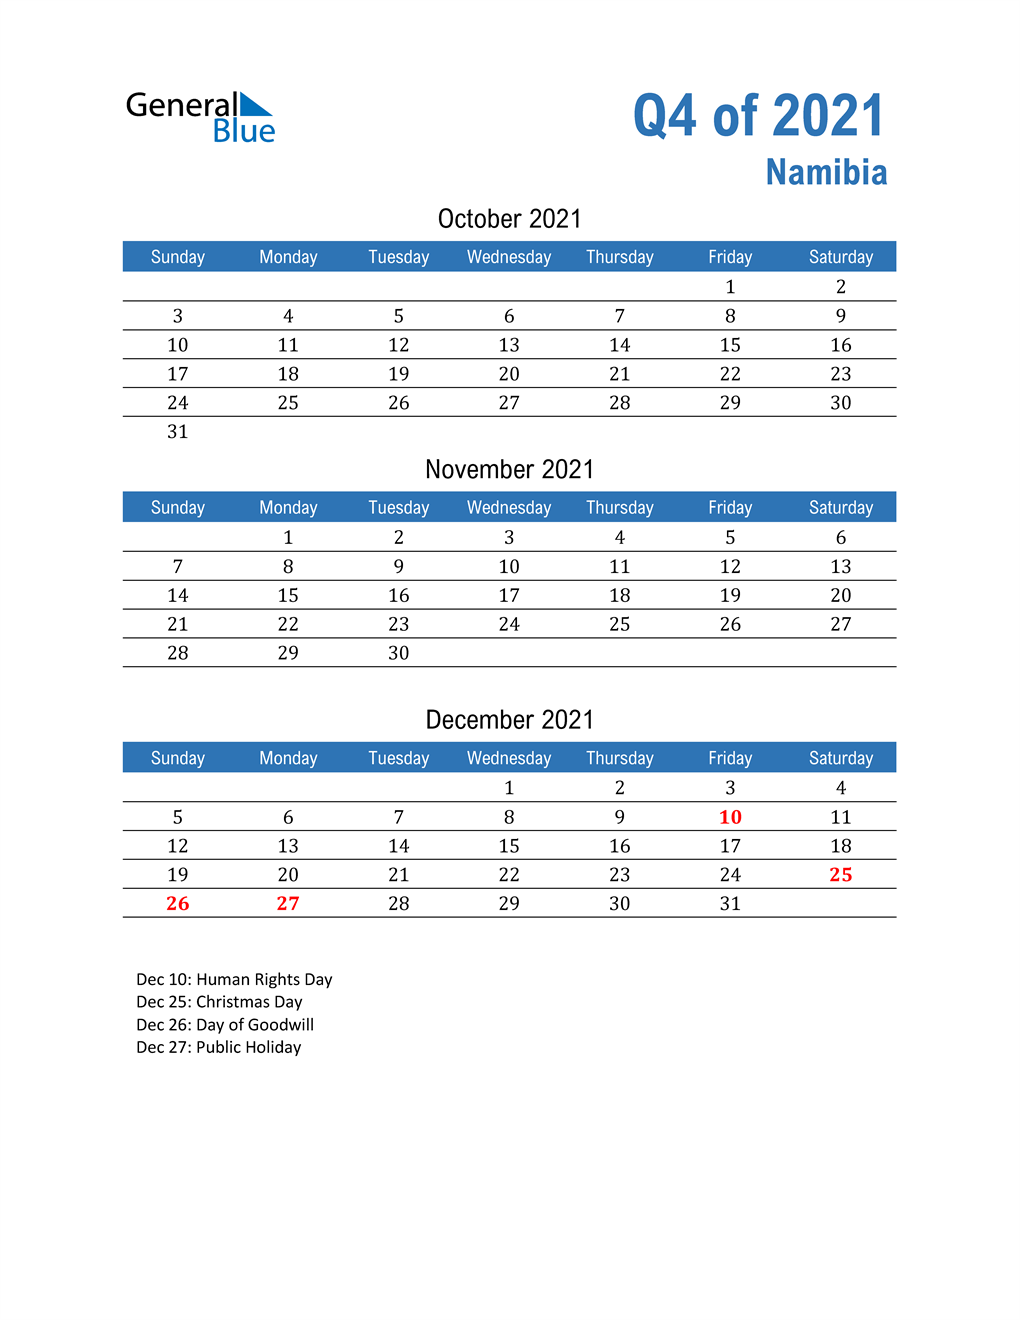  Namibia 2021 Quarterly Calendar 